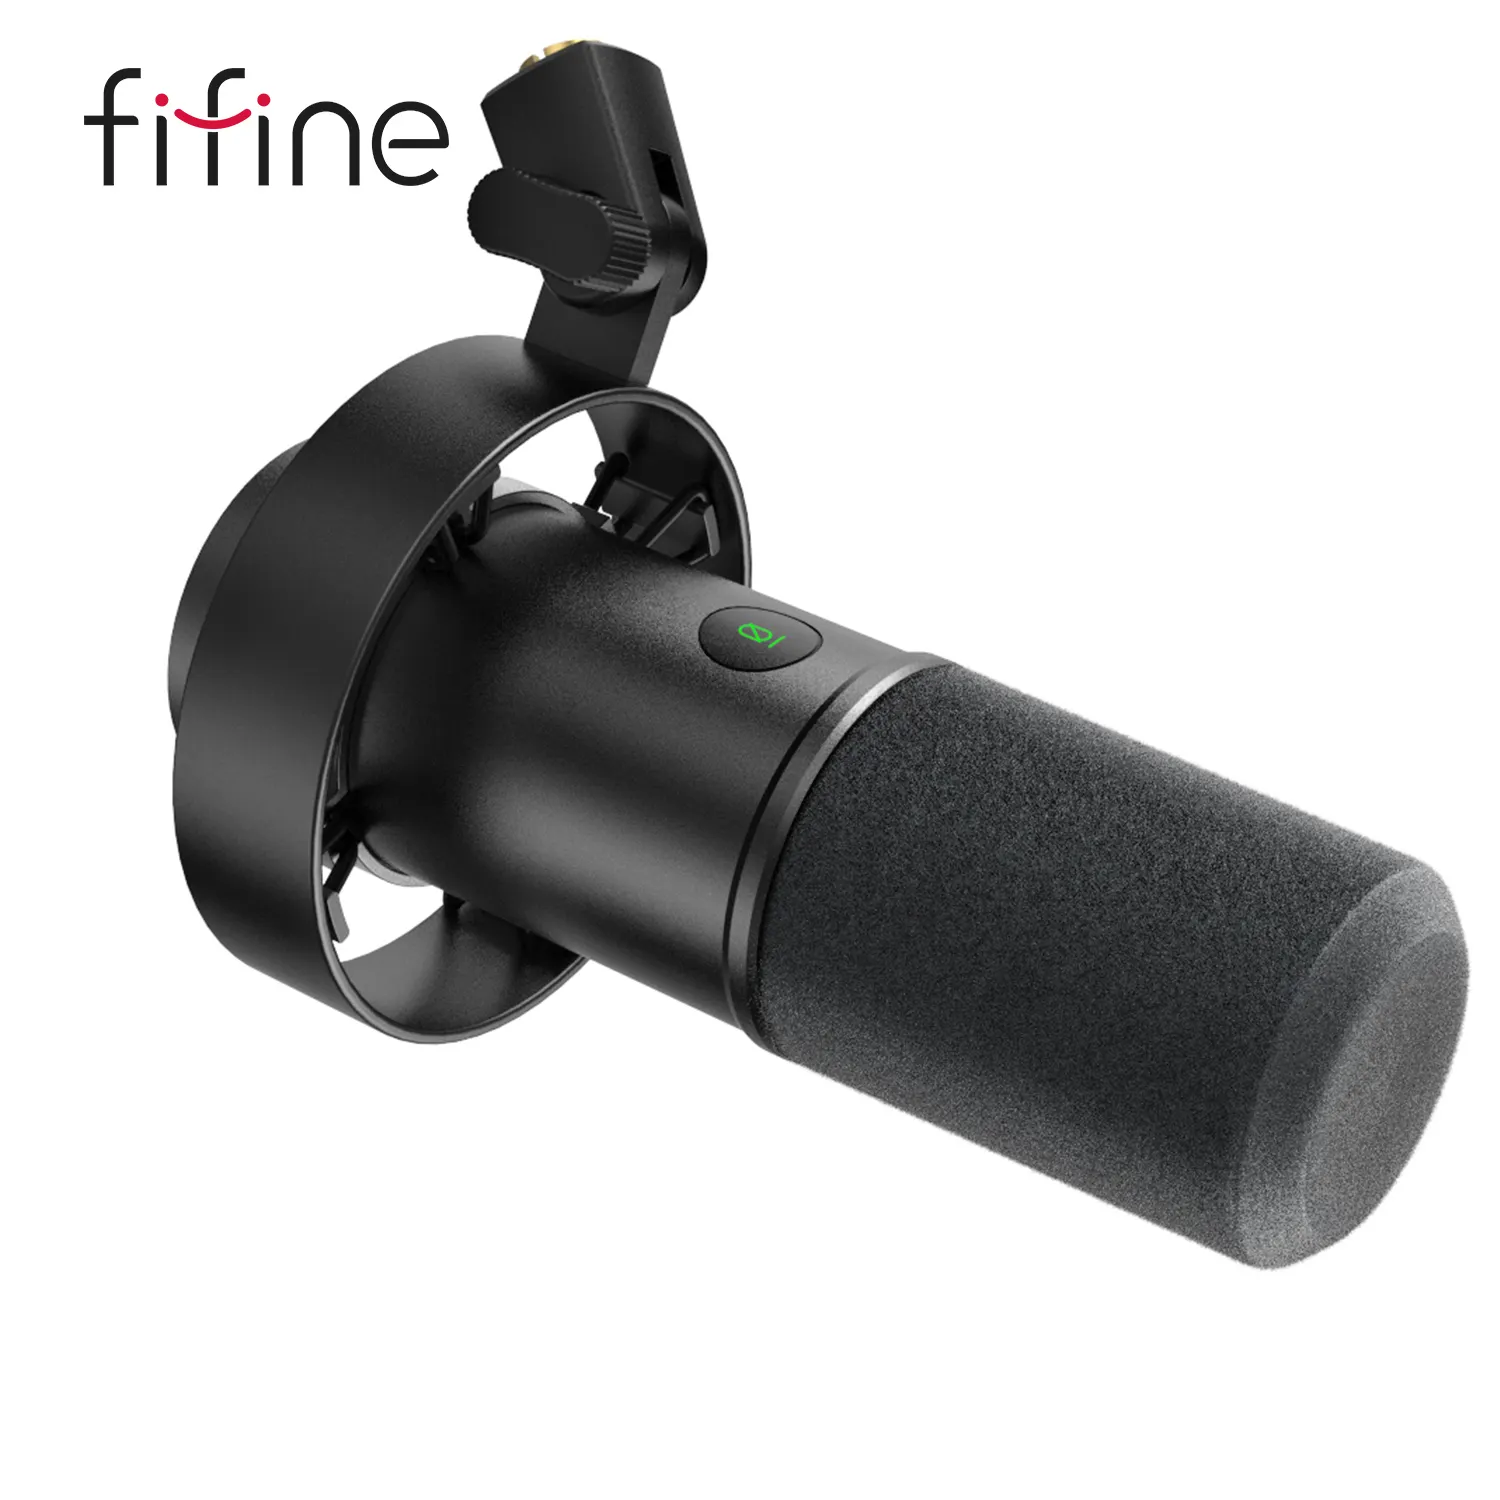 Fifine-micrófono USB para estudio de ordenador, dispositivo para transmisión en directo, Youtube, grabación, K688